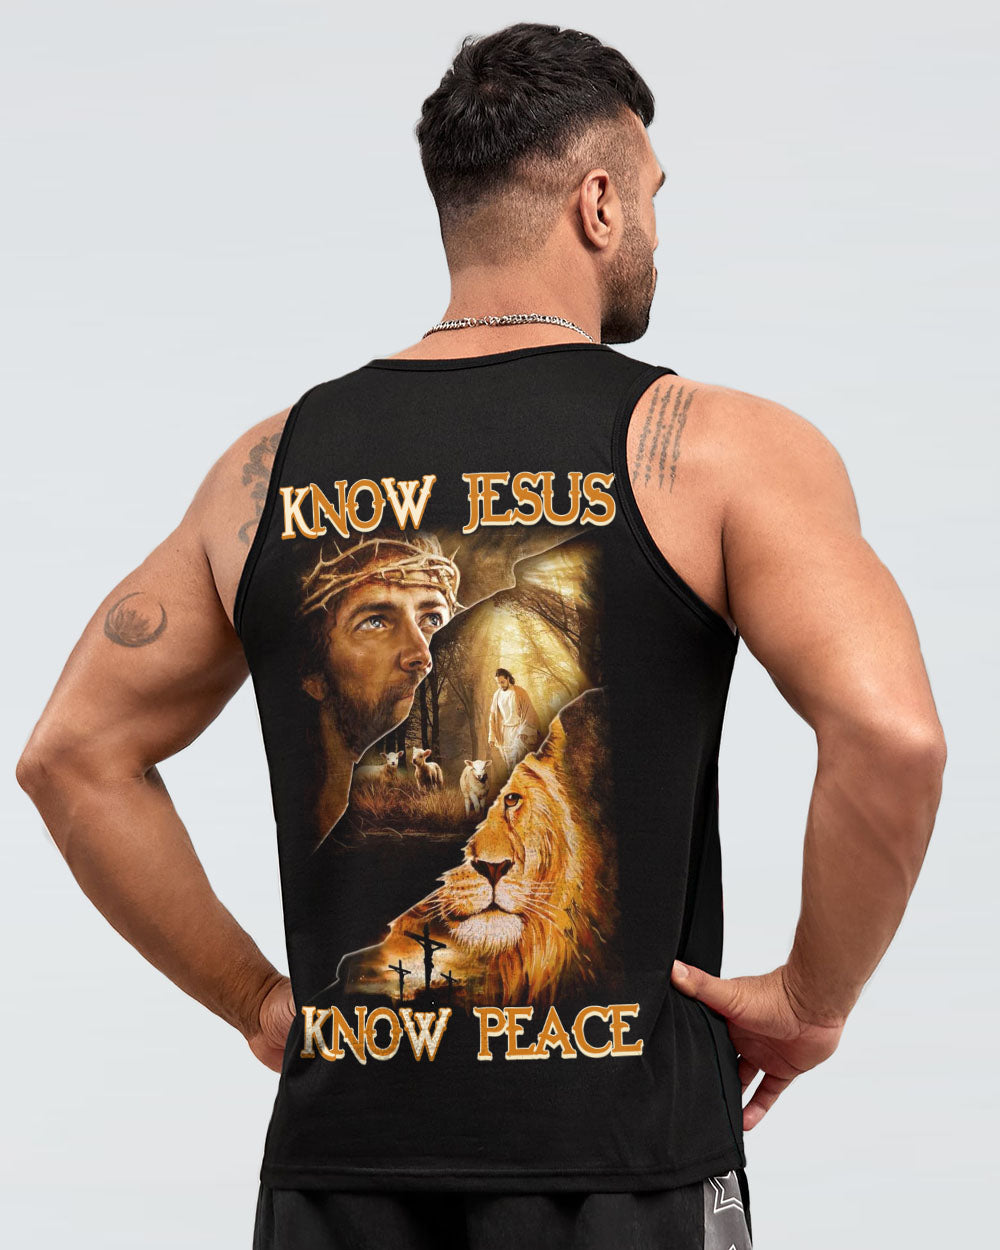 Know Jesus Know Peace Men's Christian Tanks